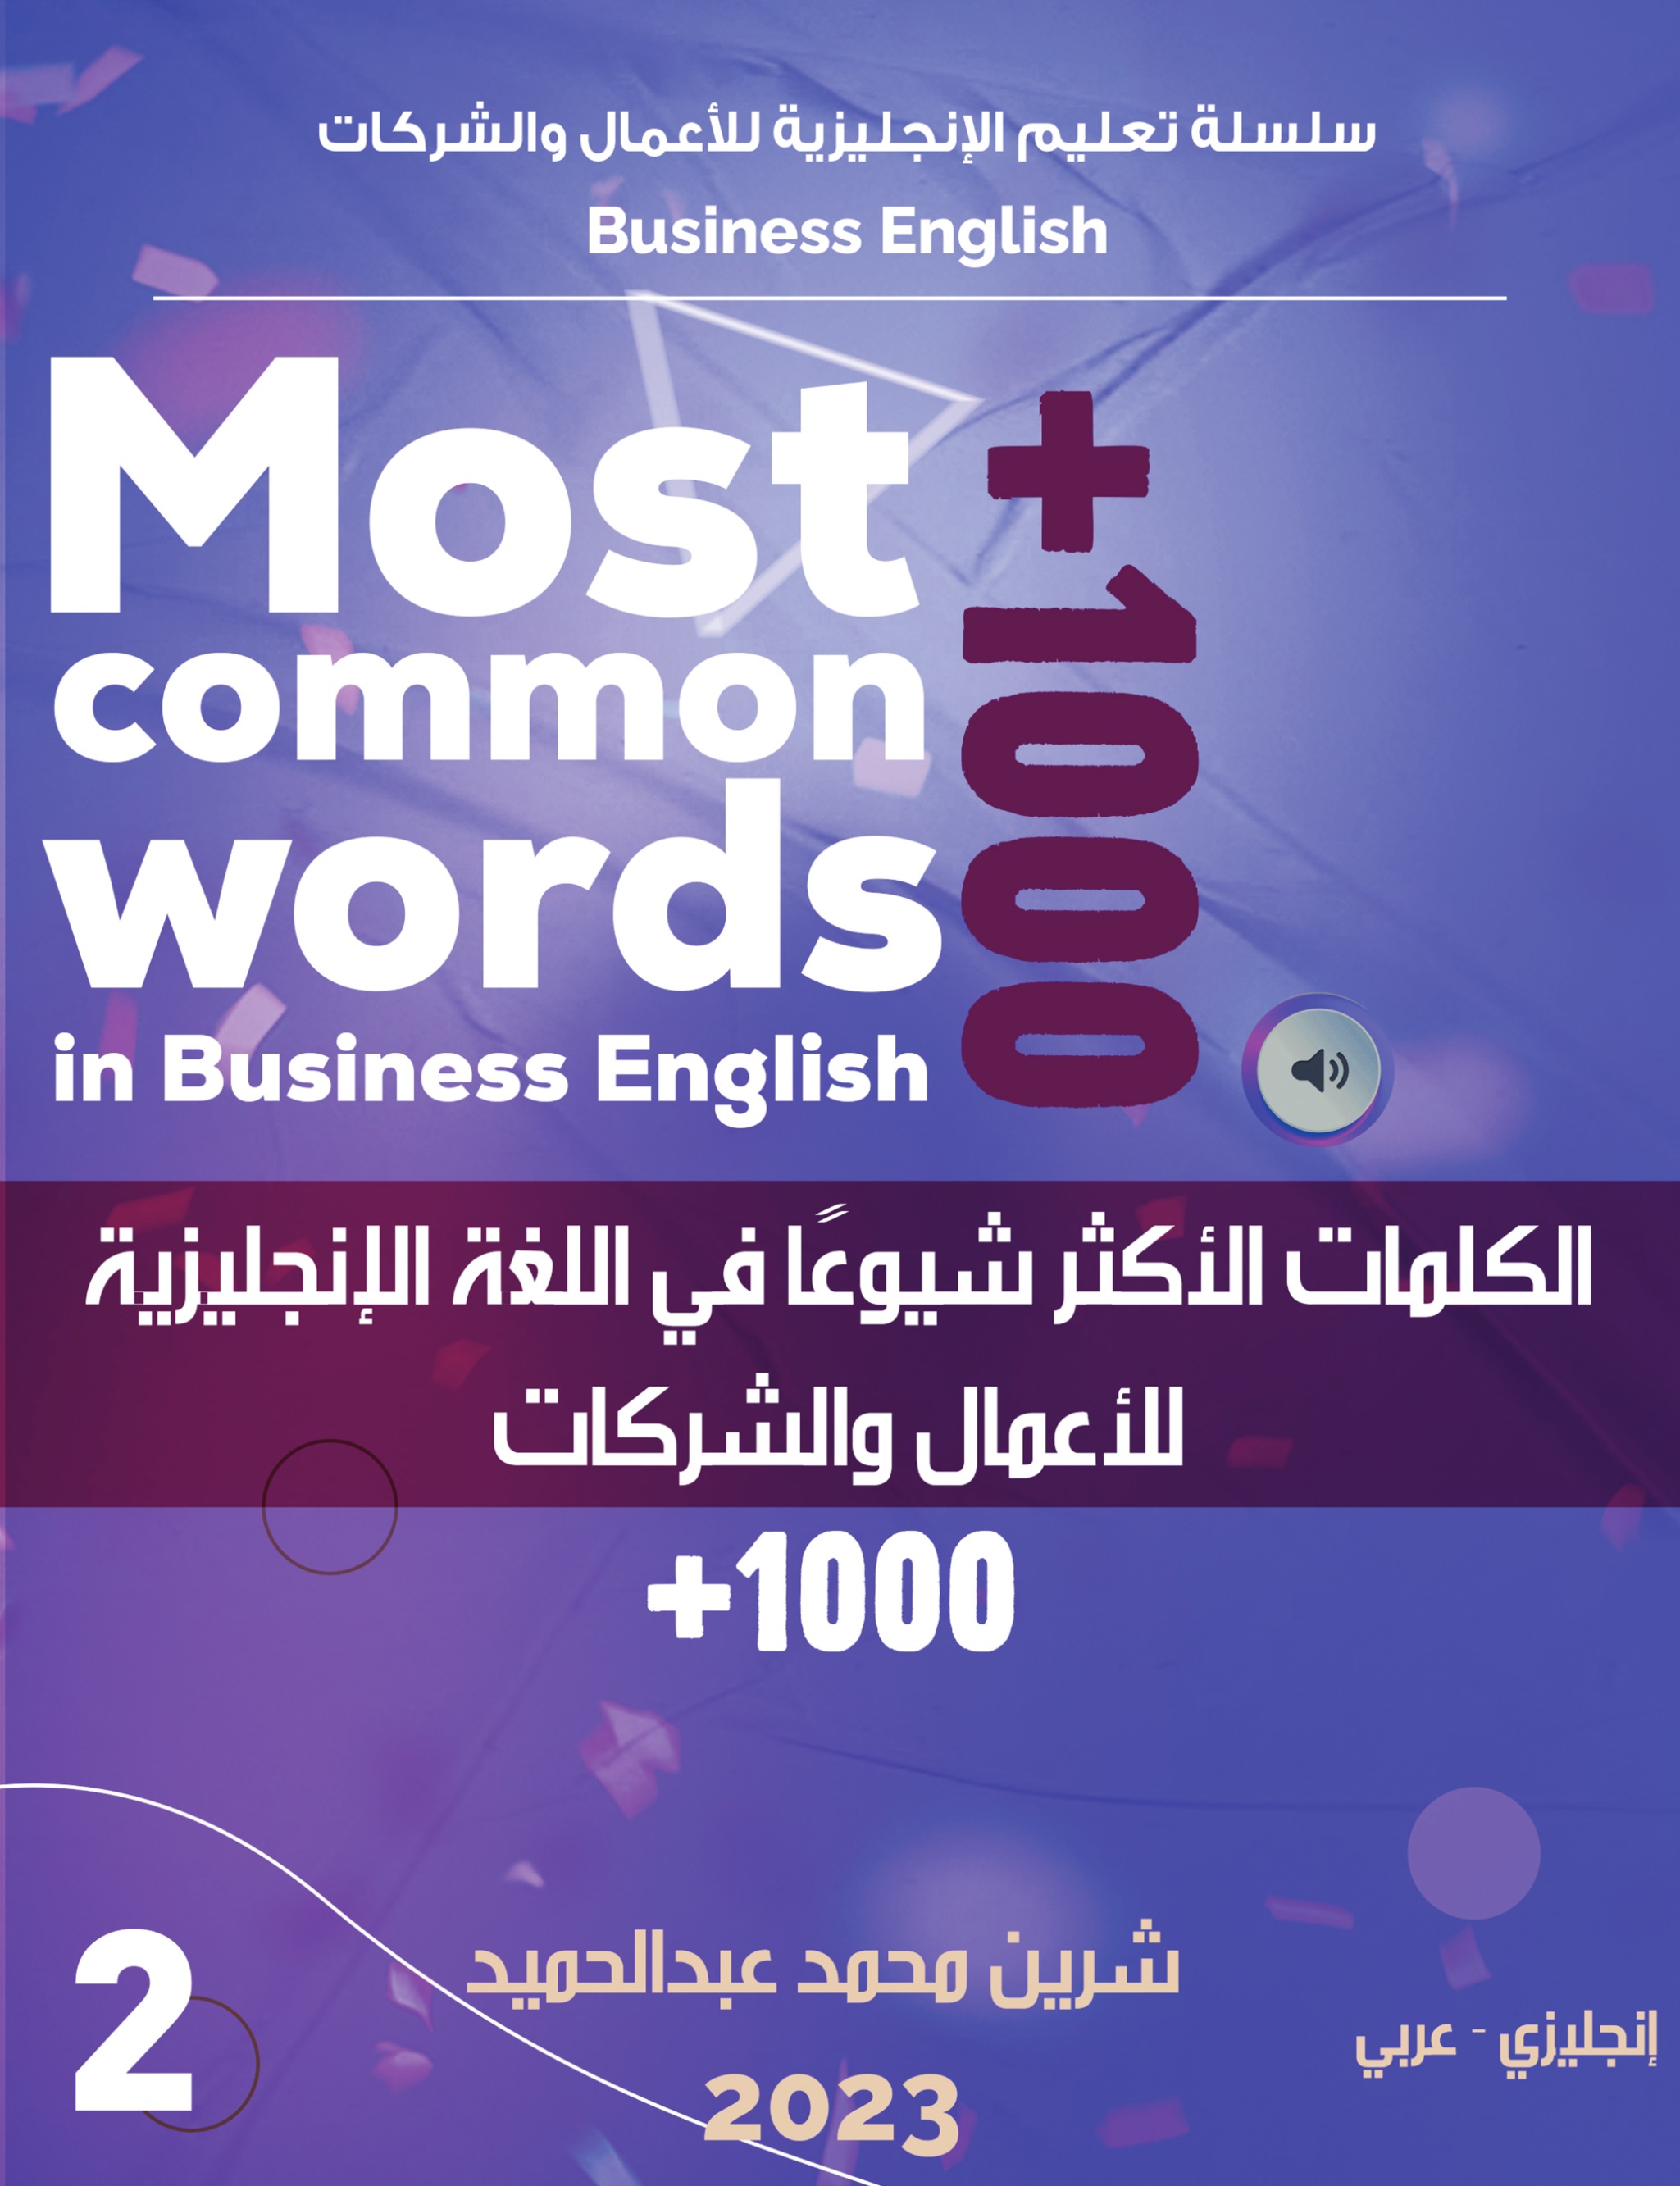 الكلمات الأكثر شيوعا في اللغة الإنجليزية للأعمال والشركات +1000